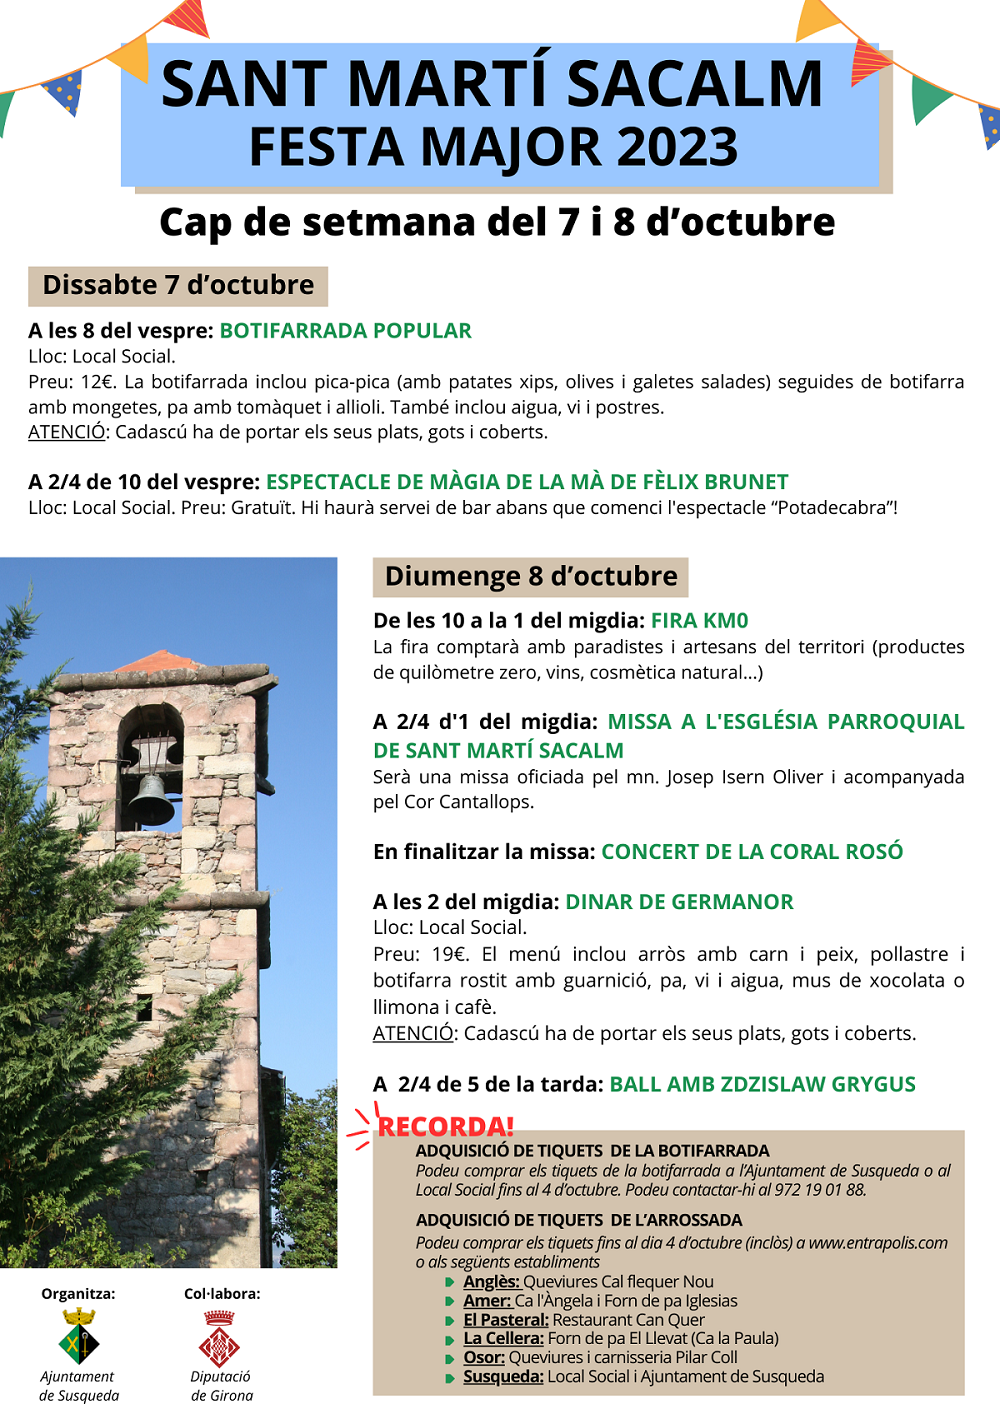 Festa Major Sant Martí Sacalm 2023 - Web Oficial de l'Ajuntament de Susqueda